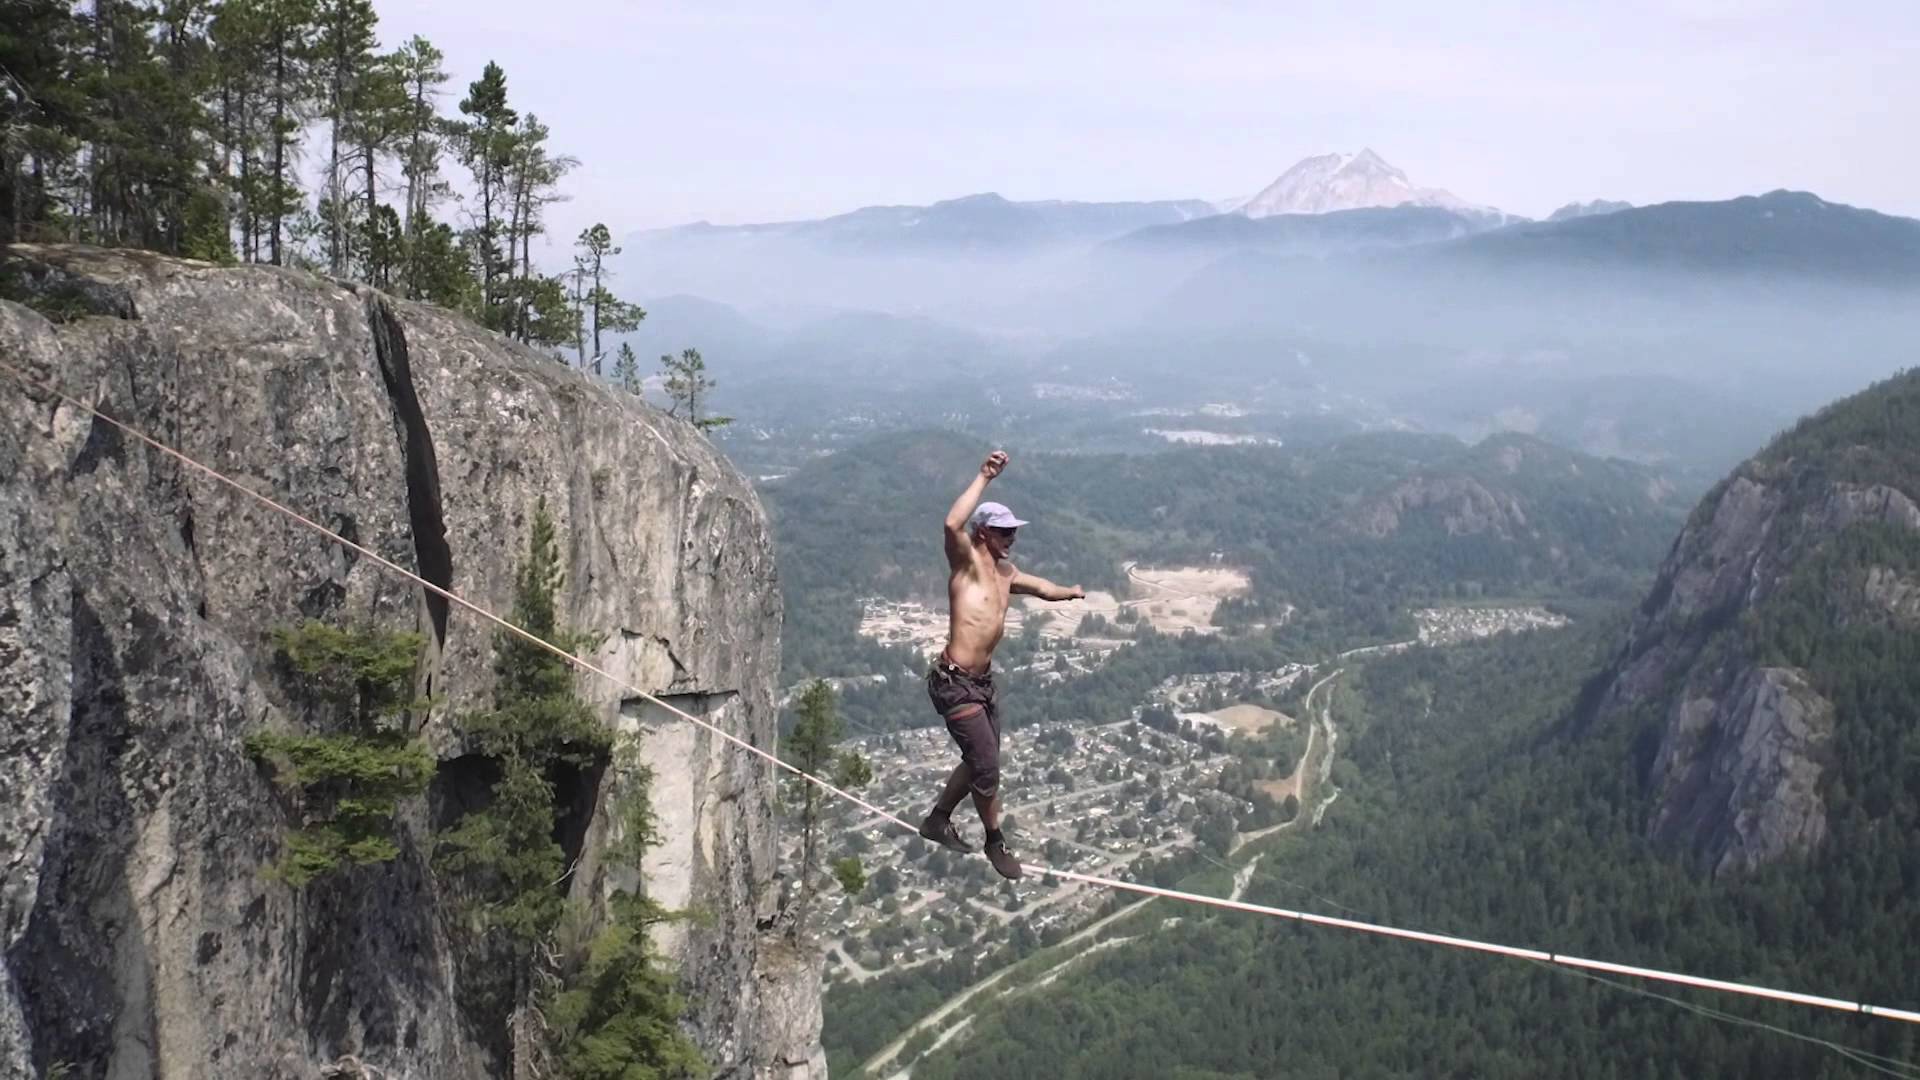 VIDEO: Oho! Staigāšana pa virvi (stropu) brīvā dabā 290 m augstumā bez drošības virves.. Tas viss pasaules rekorda dēļ. (World Record Free Solo – Insane Slacklining!)